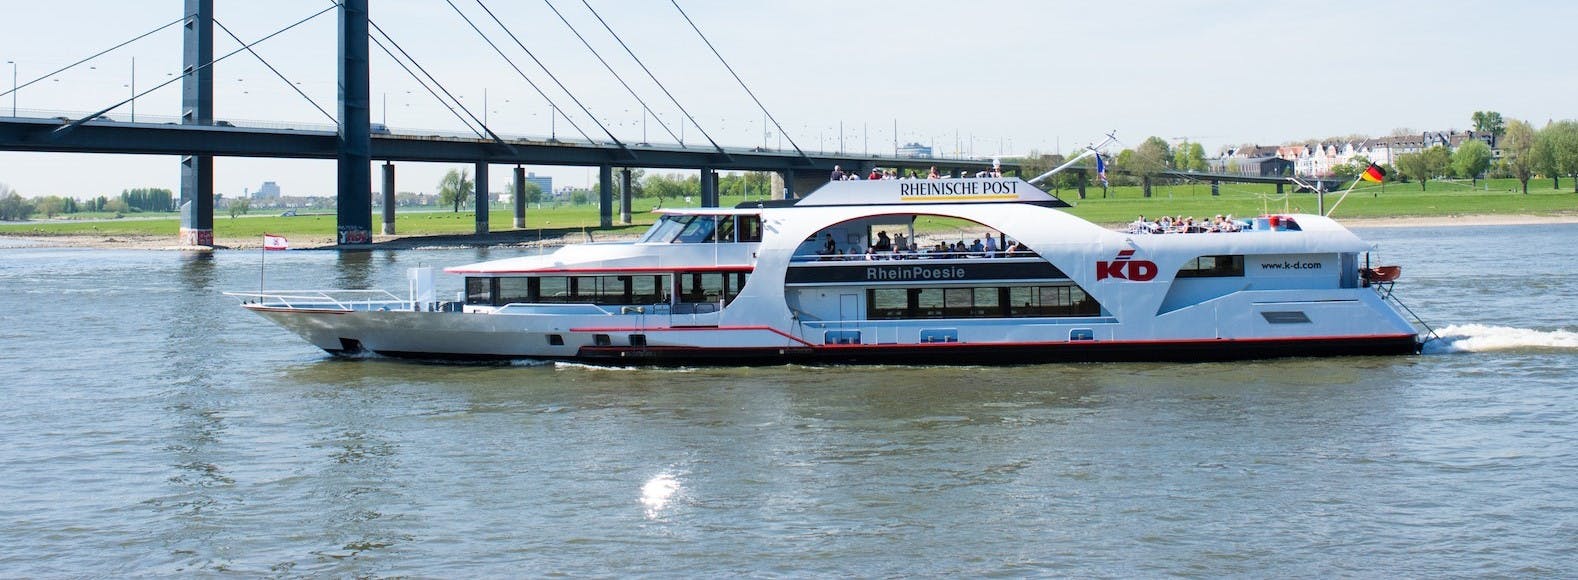 Croisière panoramique en bateau fluvial à Düsseldorf avec audioguide